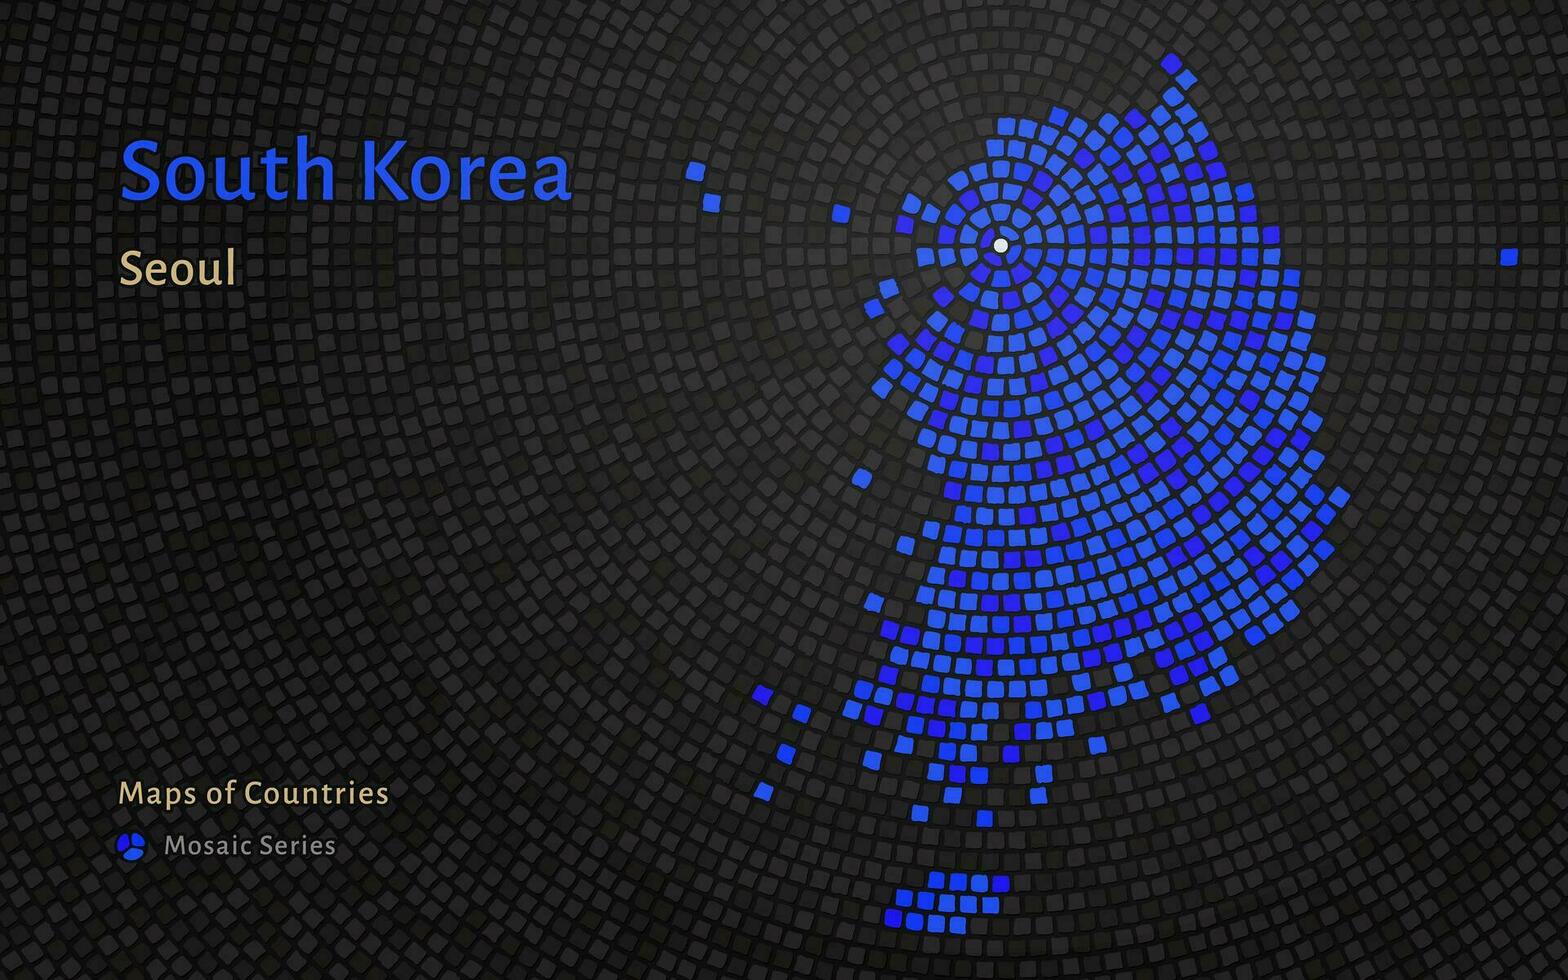 sur Corea azul mapa con un capital de Seúl mostrado en un mosaico modelo vector